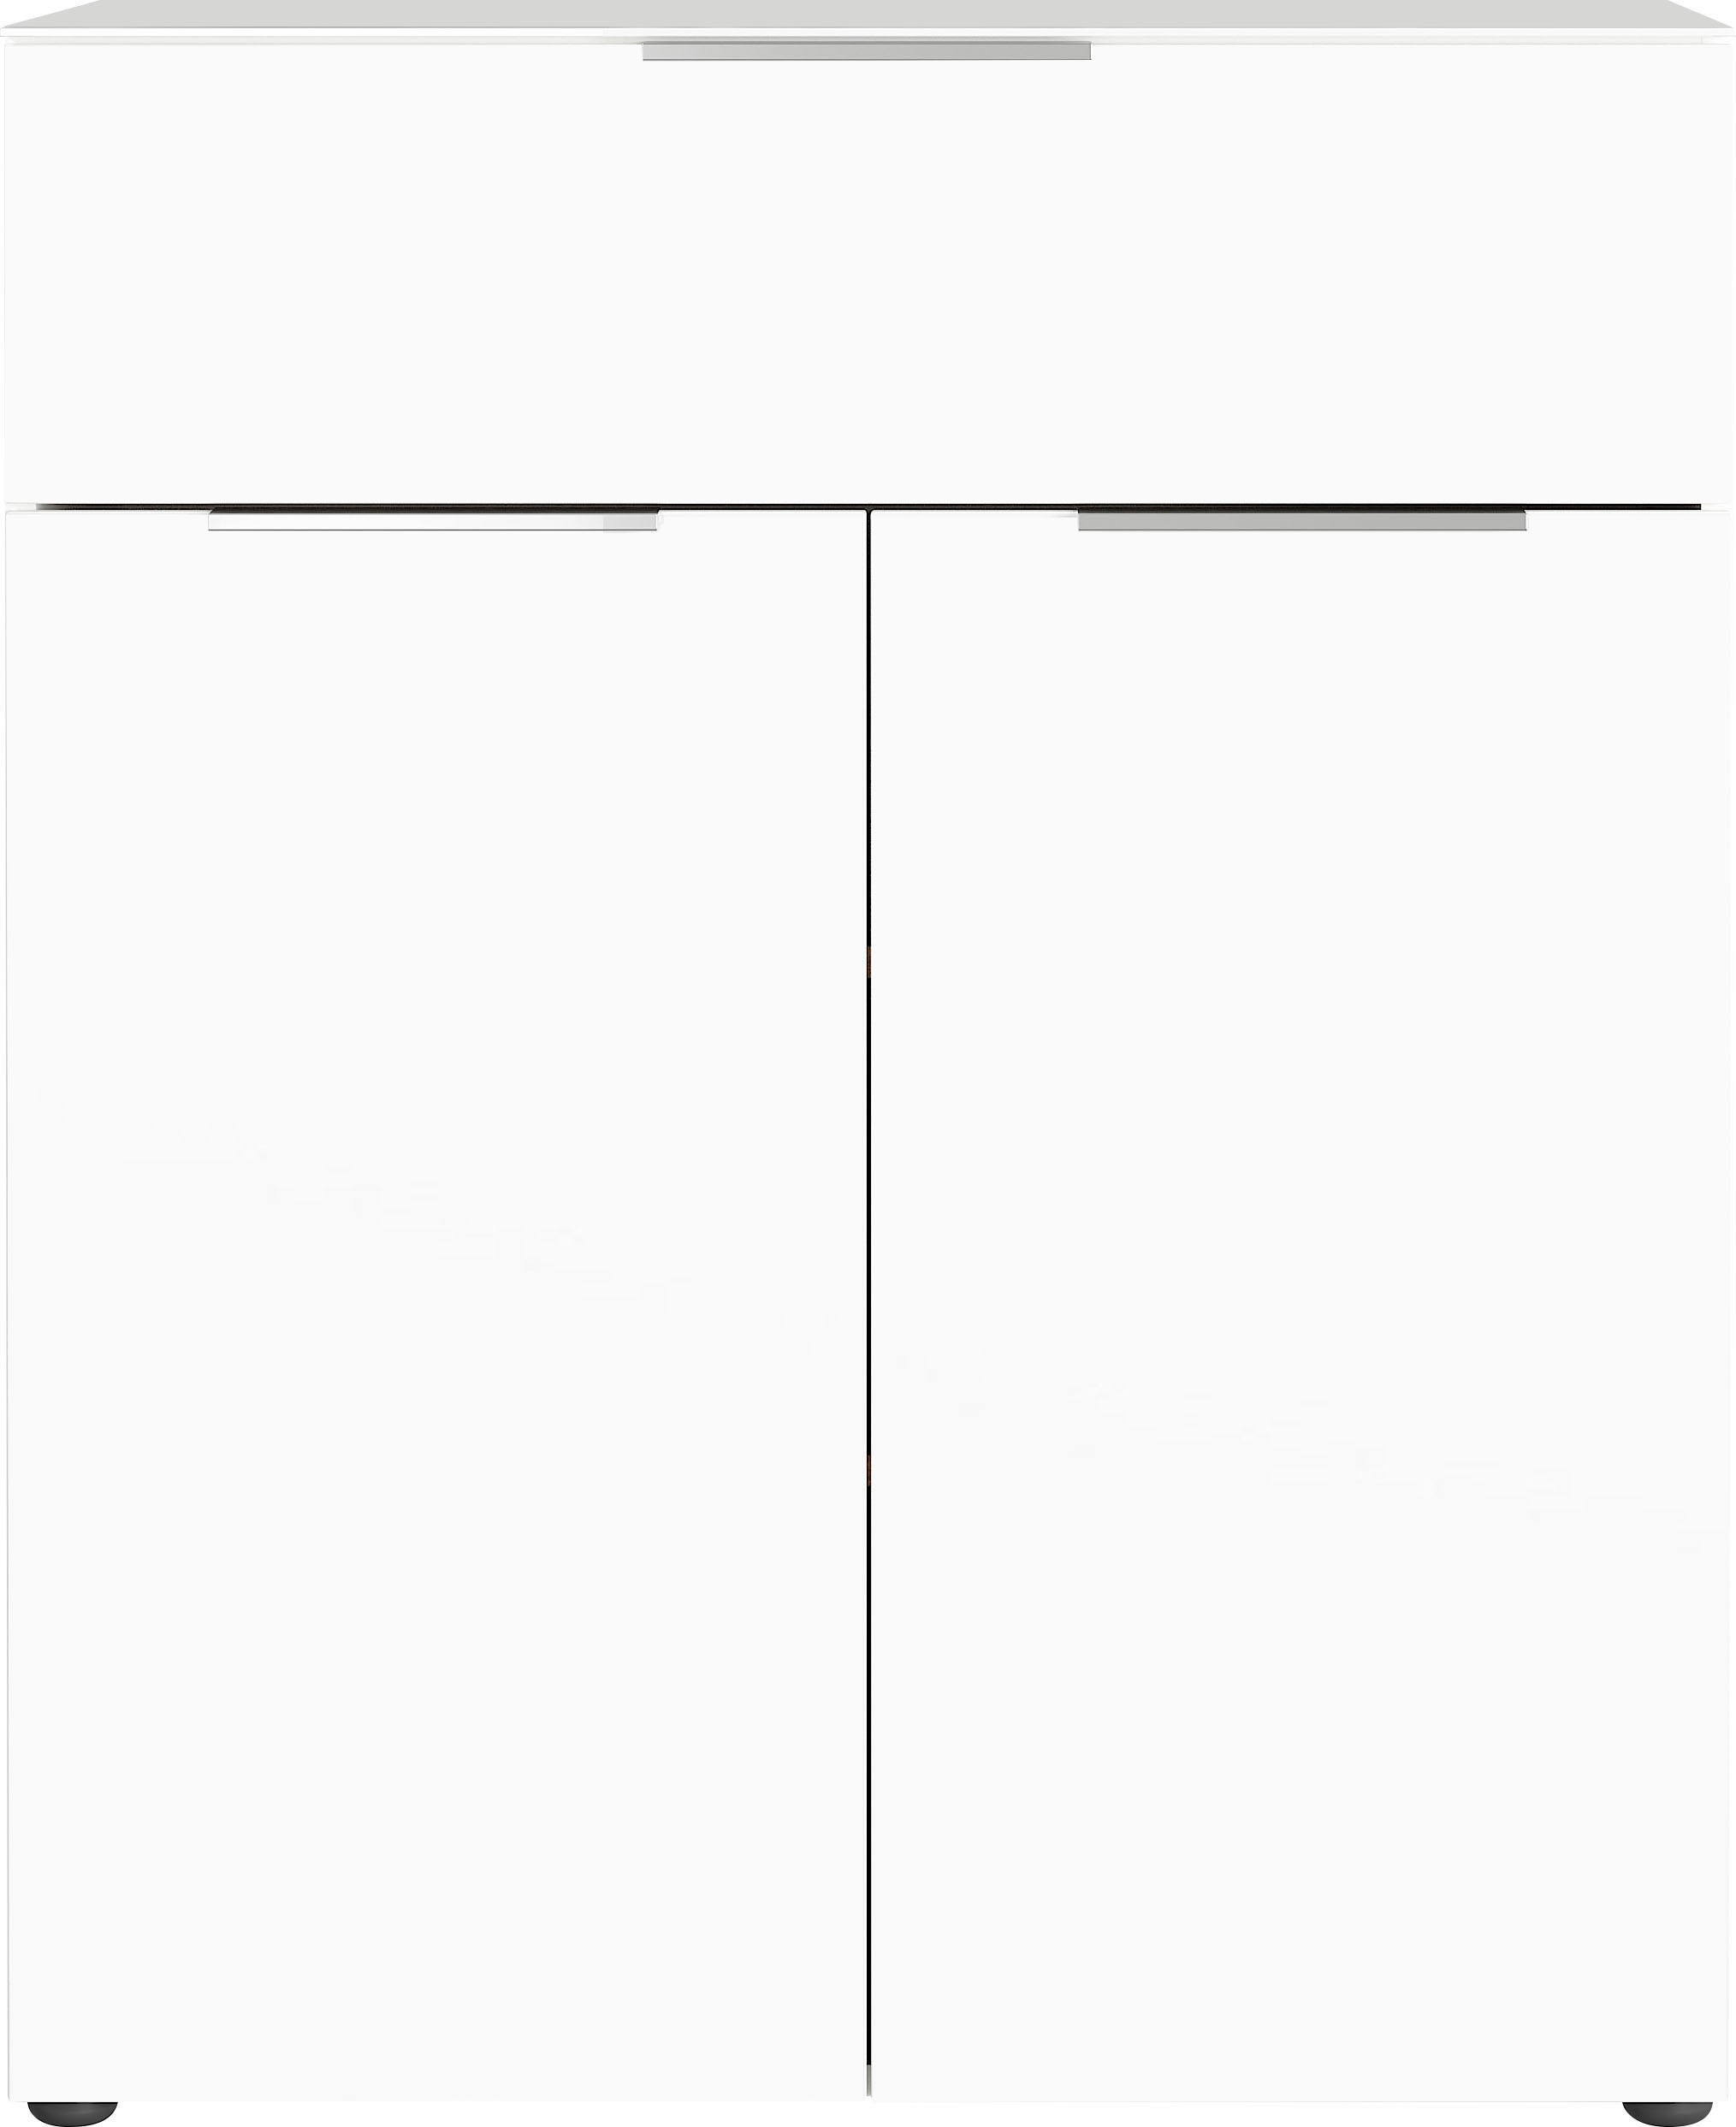 GERMANIA Kombikommode »Oakland«, Breite 83 cm, Fronten und Oberboden mit Glasauflage